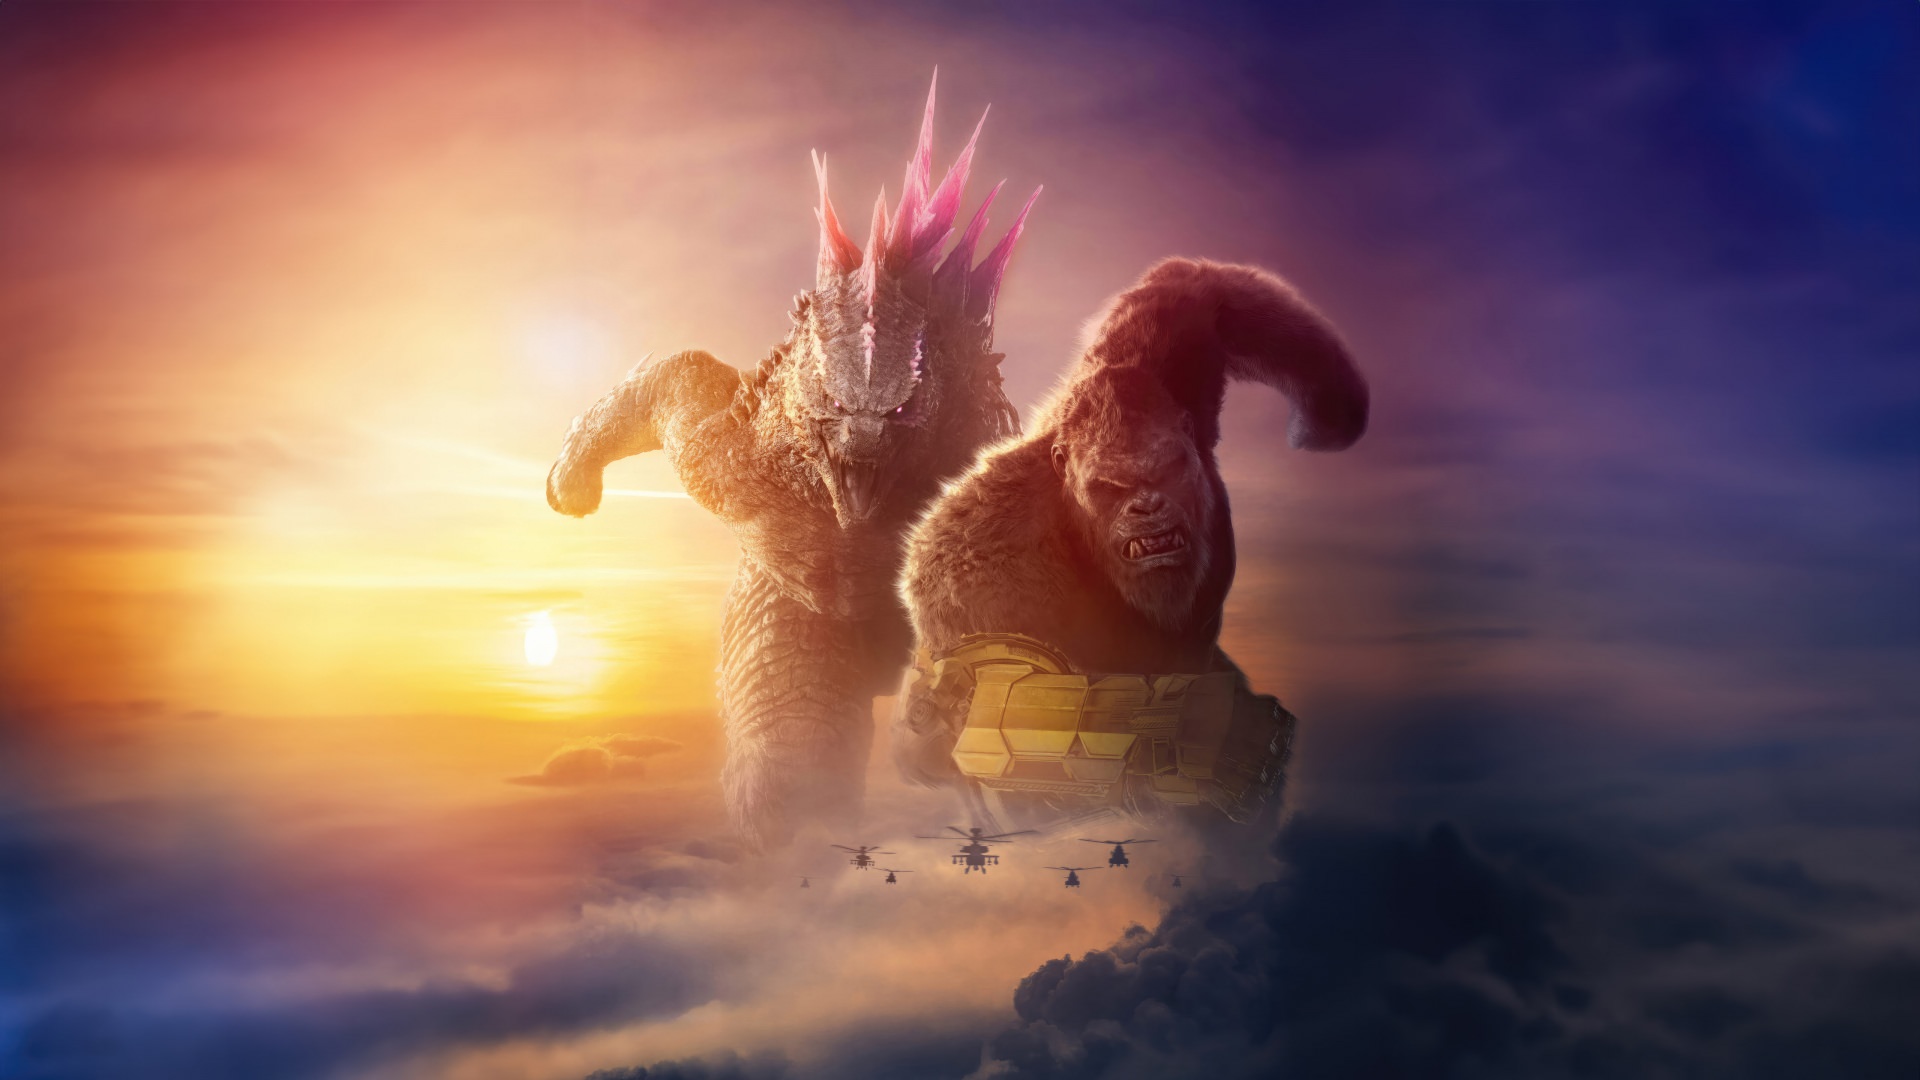 فیلم Godzilla x Kong رکورد فروش جدیدی را ثبت کرد